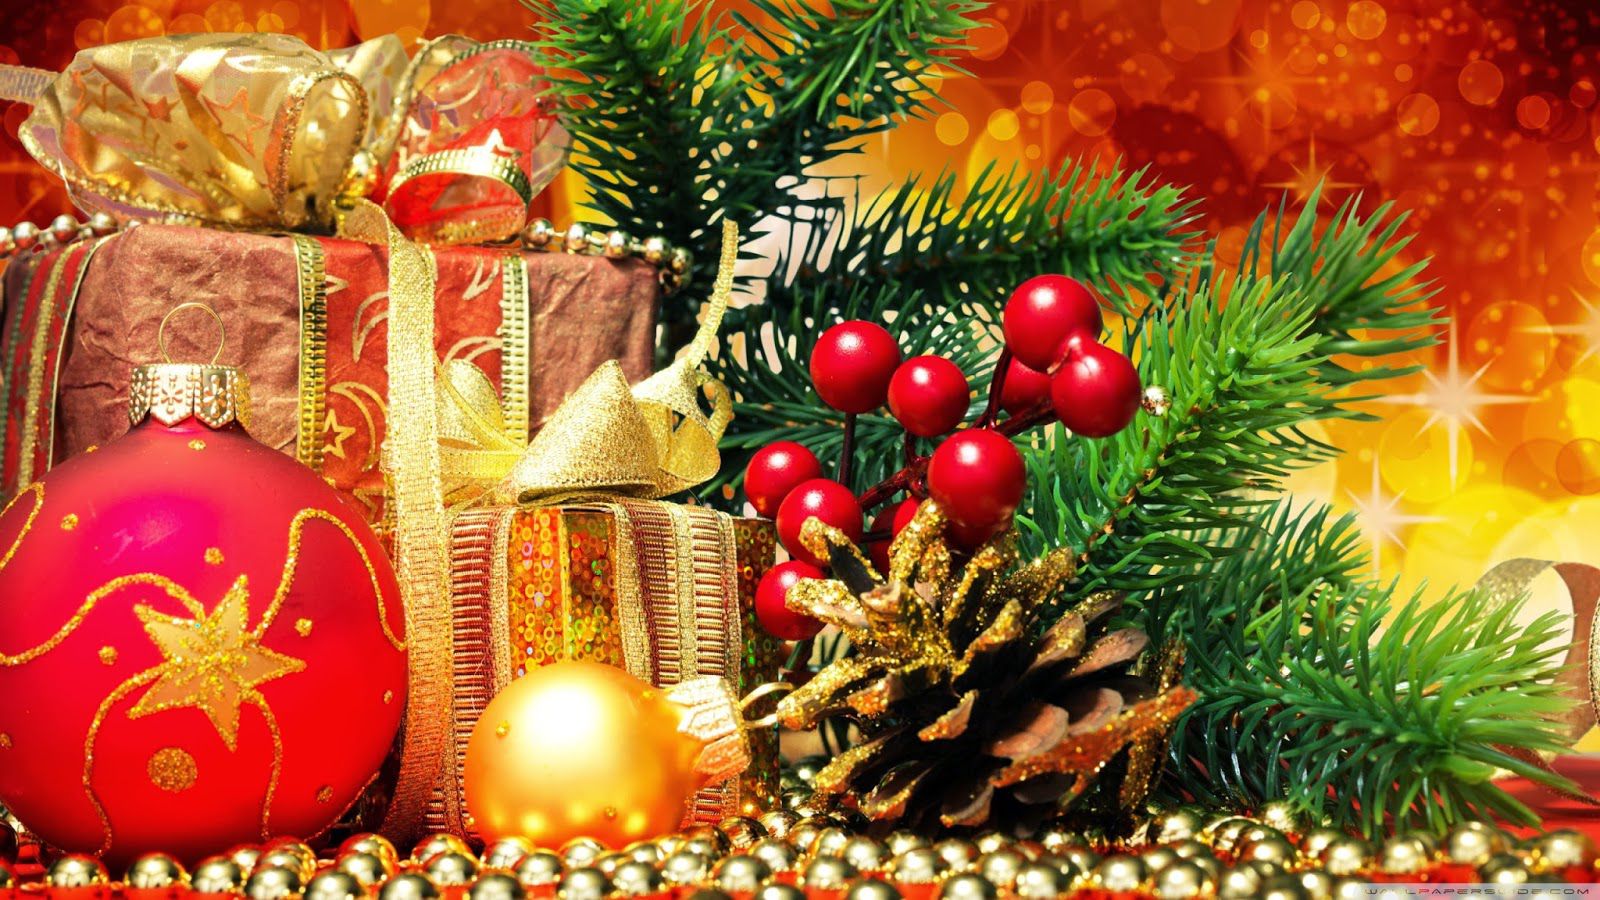 weihnachtstapete hd,weihnachtsdekoration,weihnachtsschmuck,weihnachtsbaum,weihnachten,heiligabend